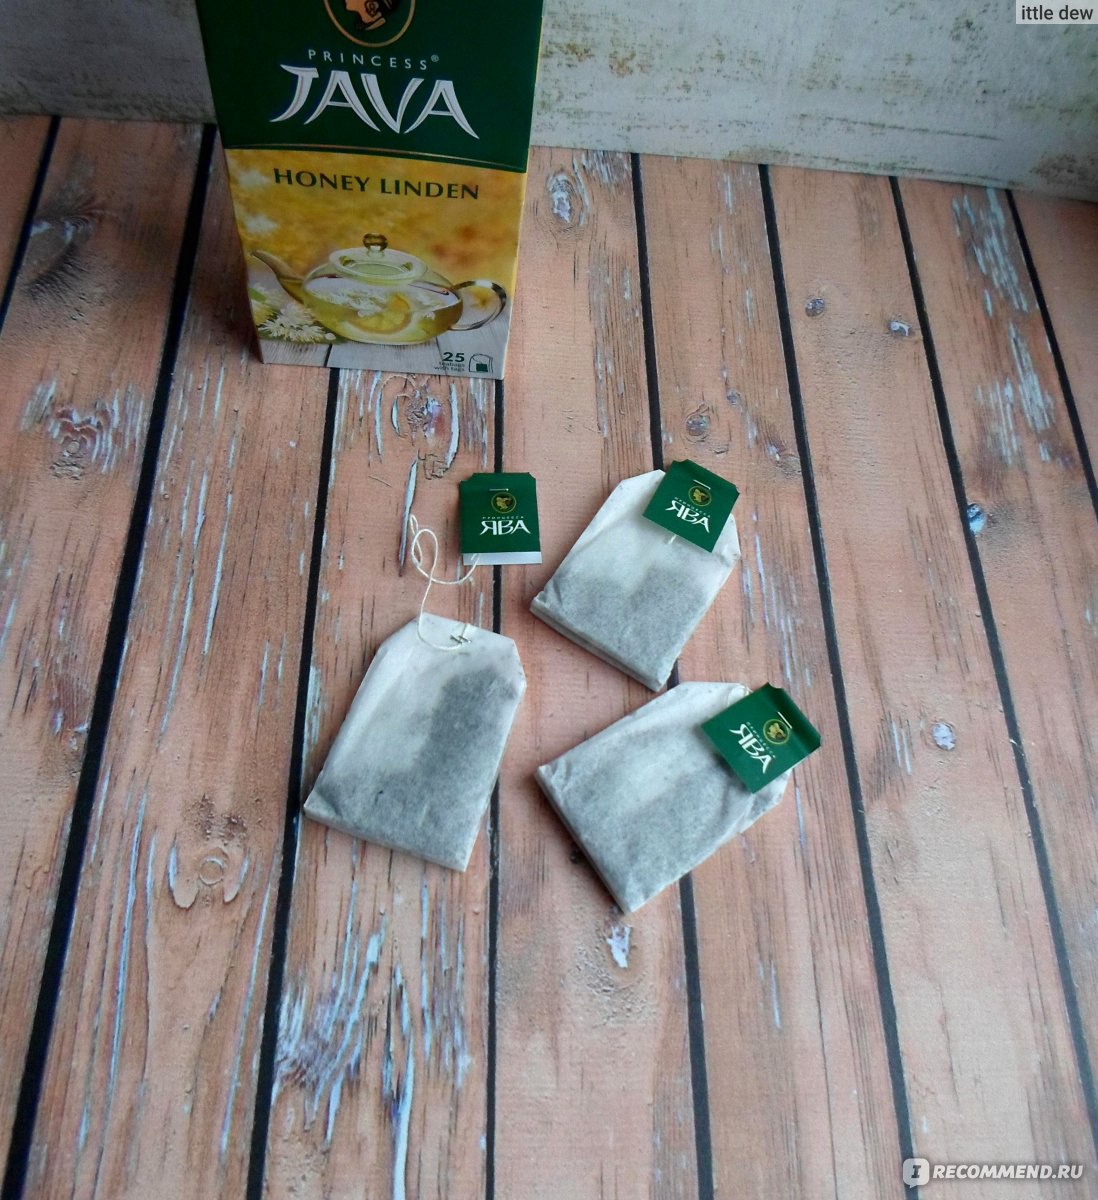 Чай зеленый Принцесса Ява в пакетиках "Медовая Липа" фото